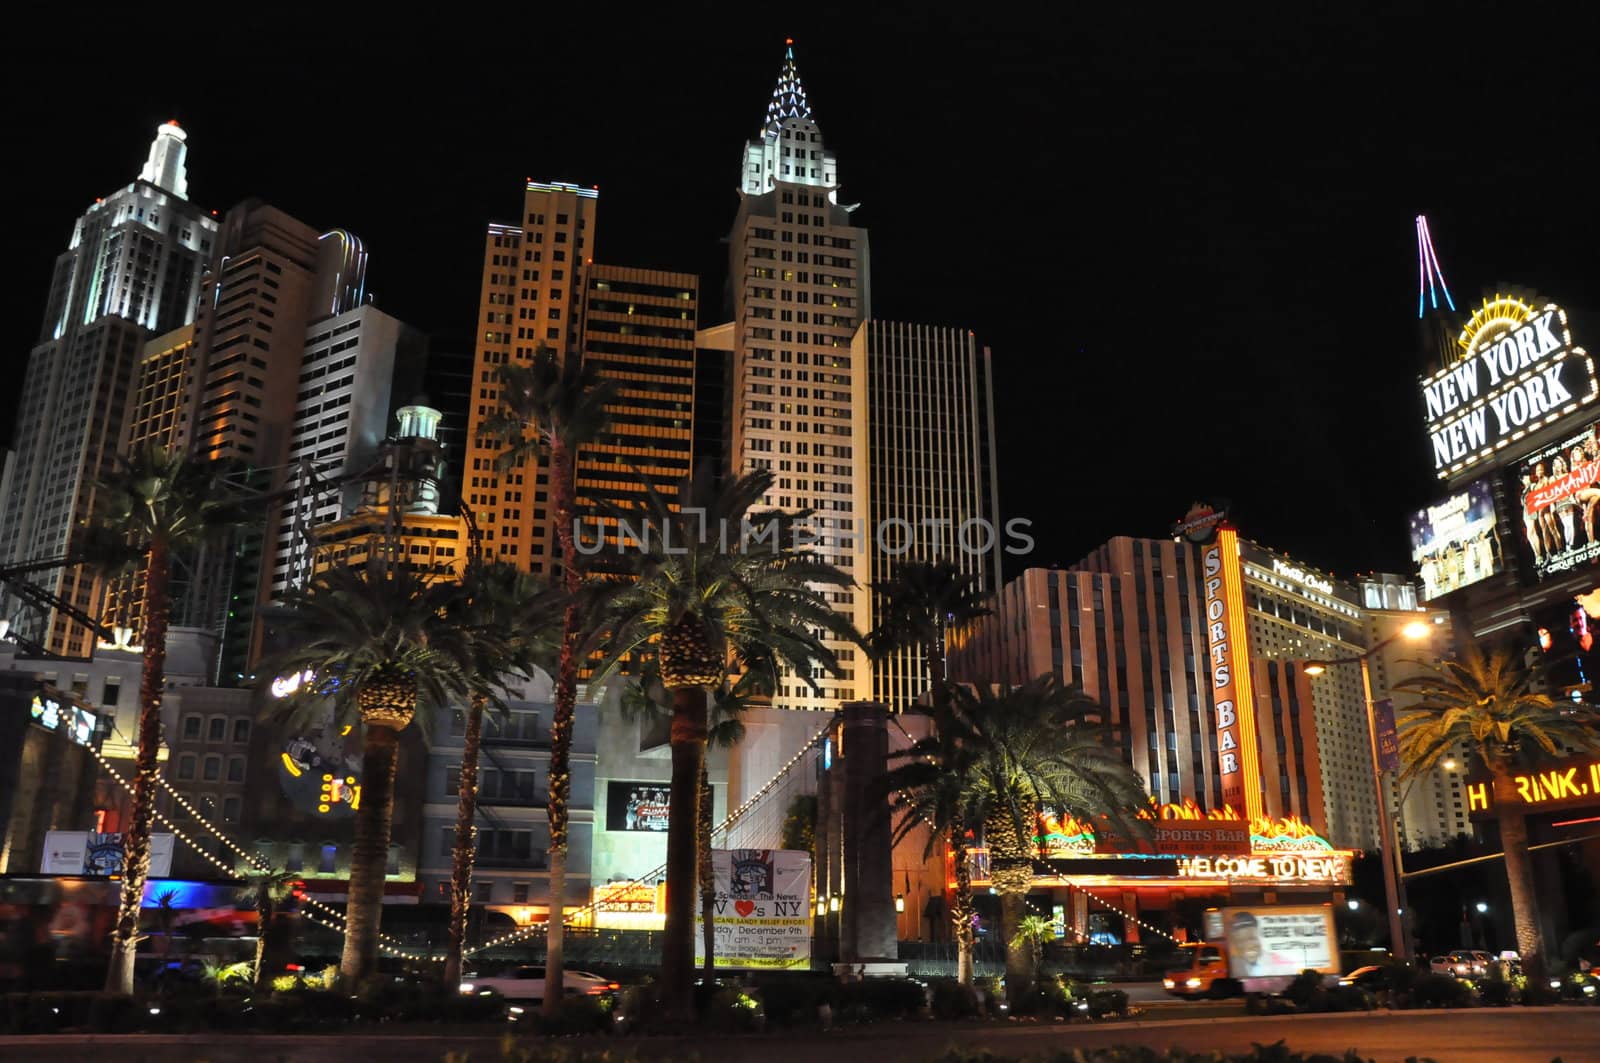 New York New York Hotel and Casino in Las Vegas by sainaniritu